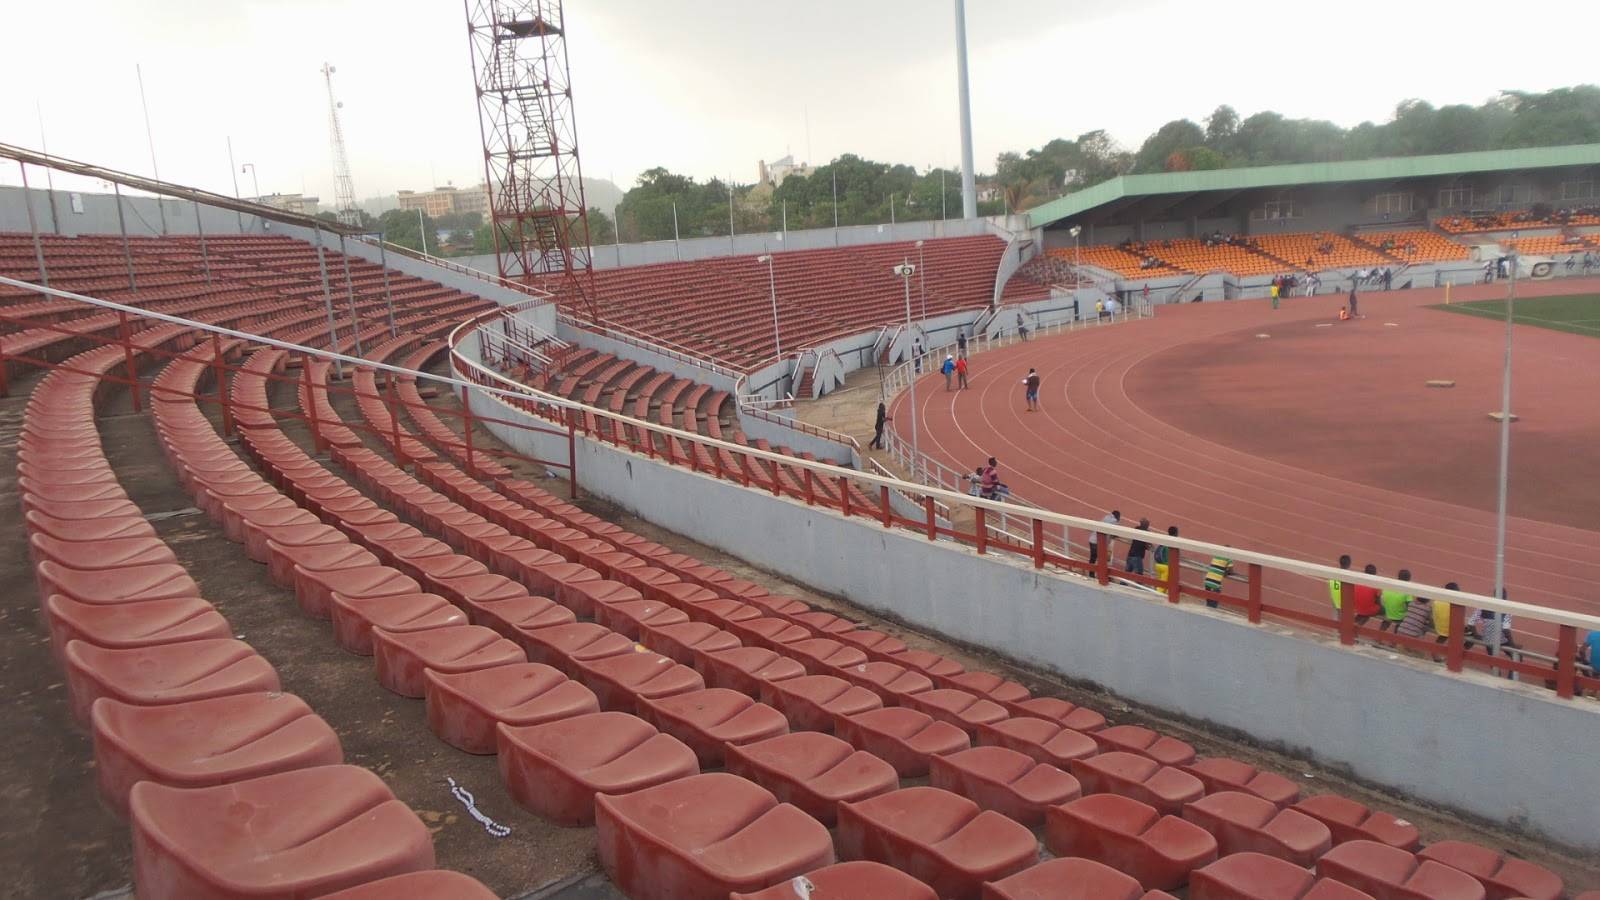 Nnamdi Azikiwe Stadium